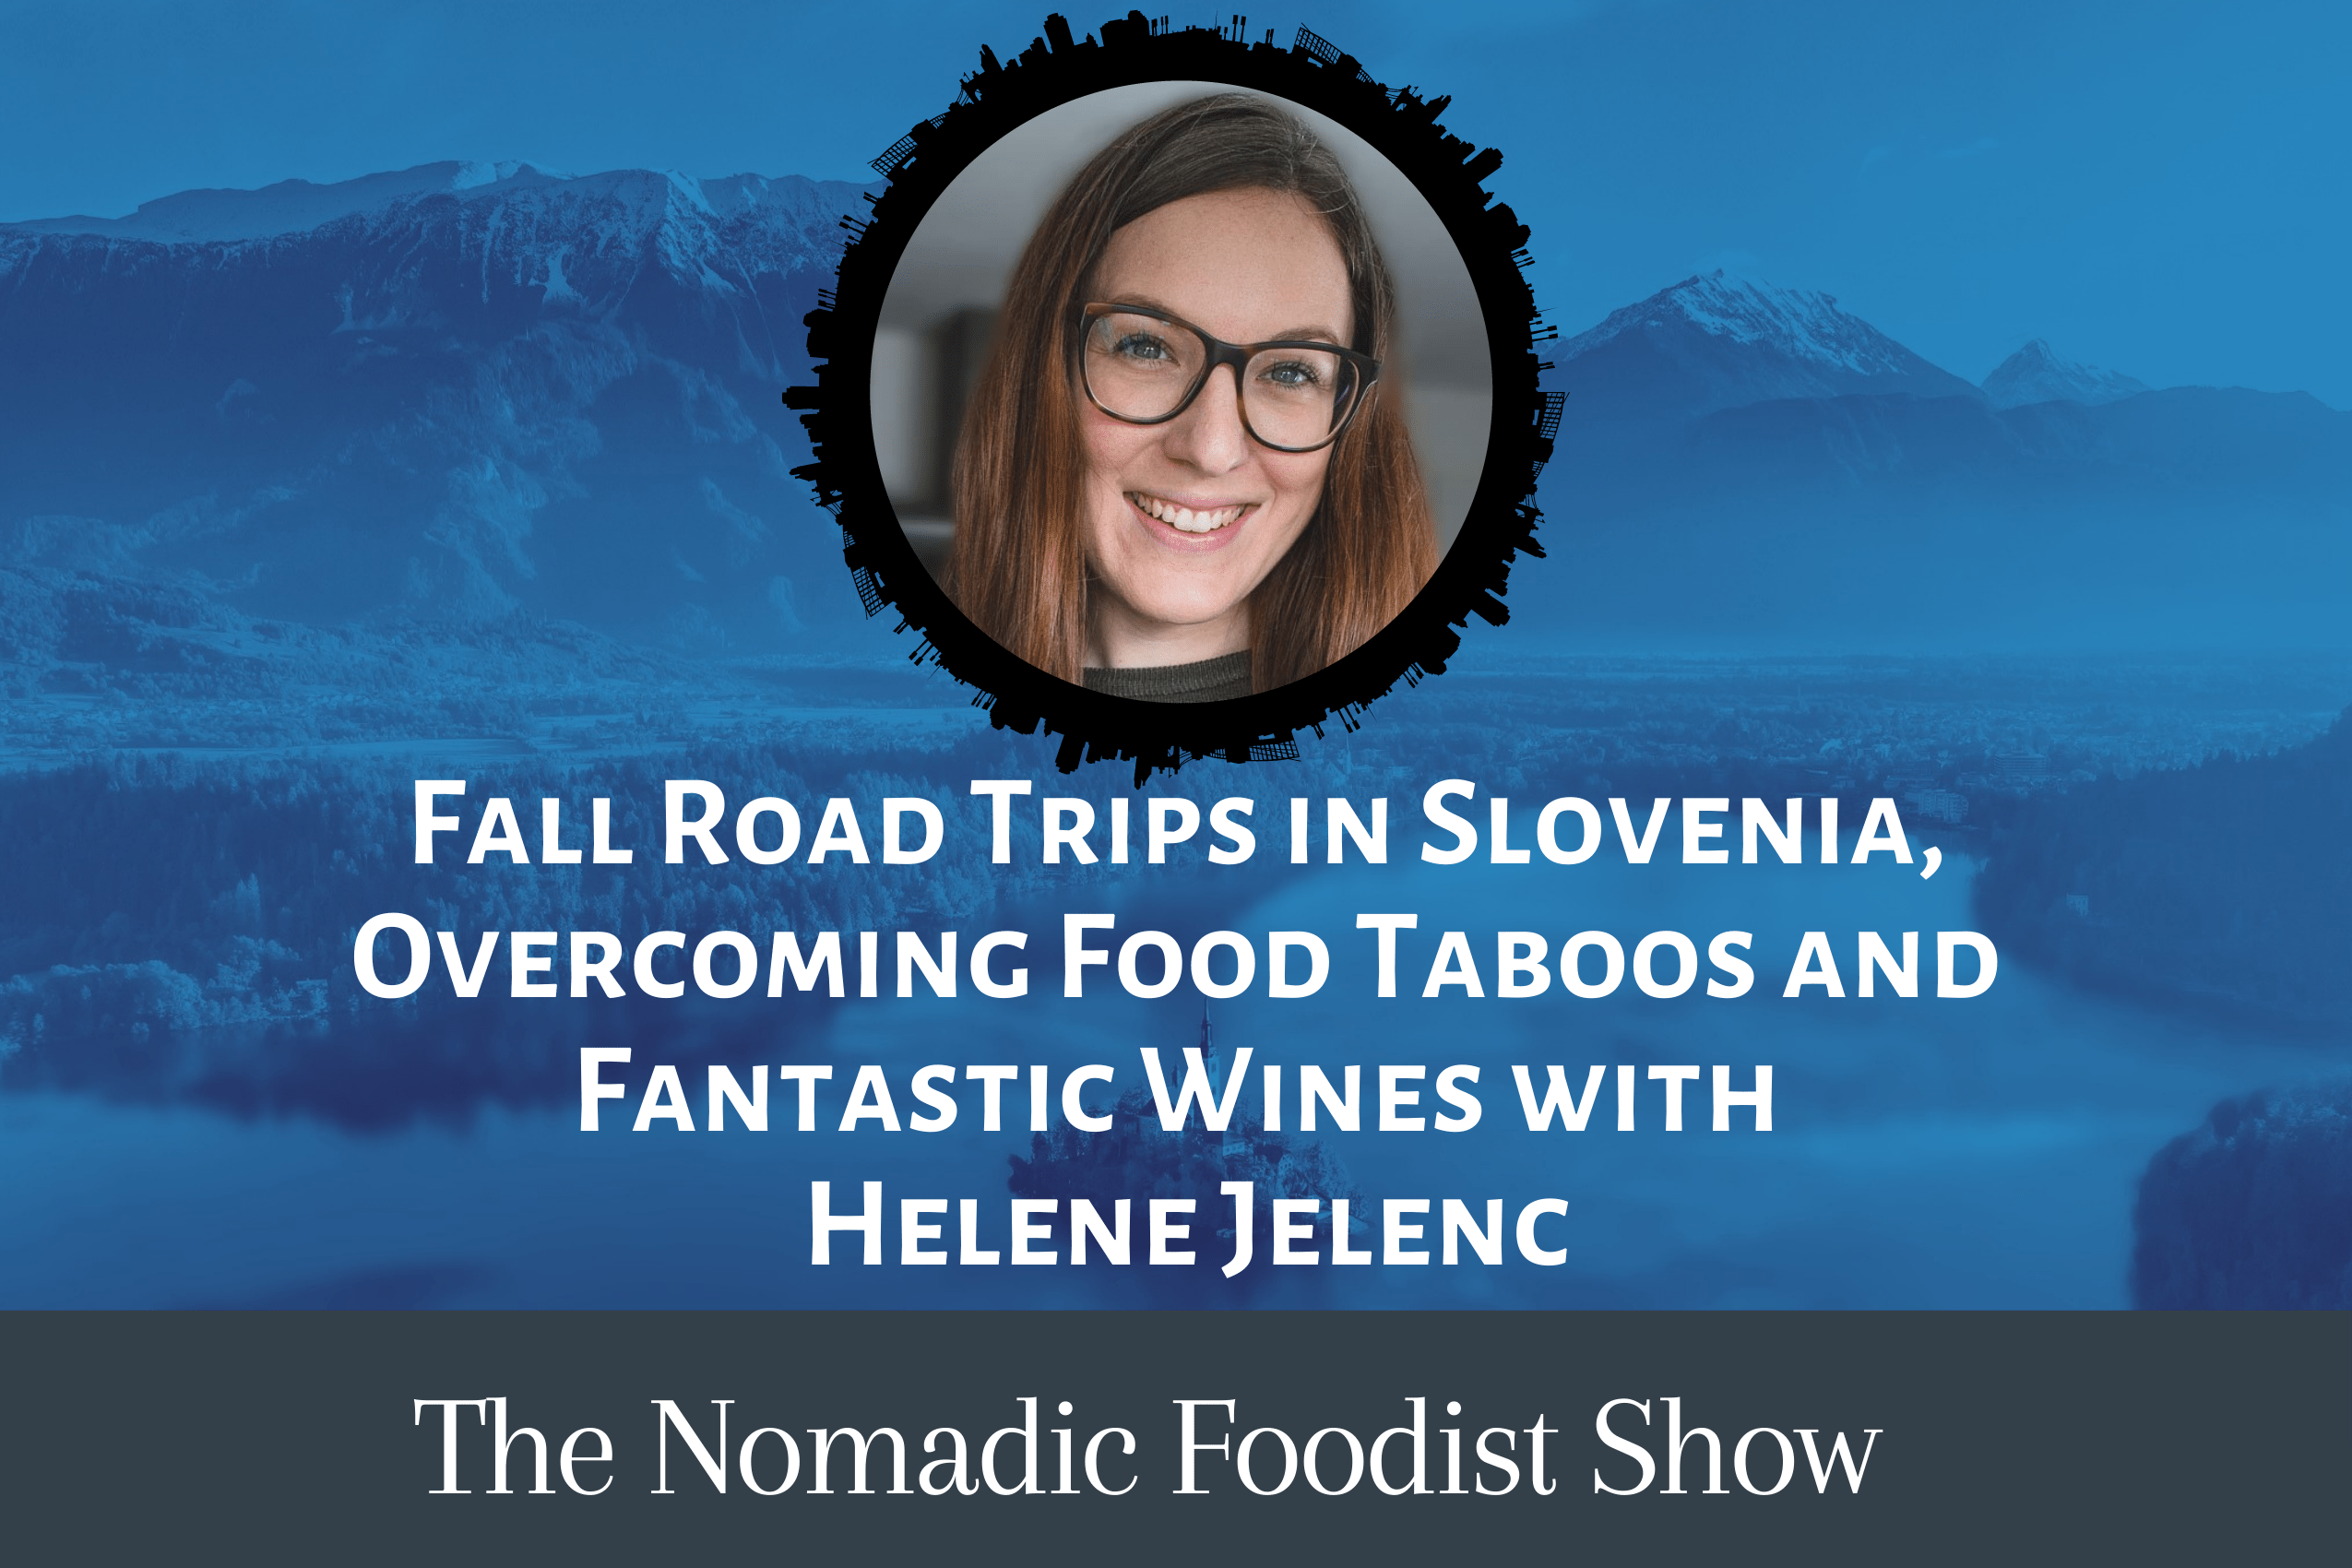 Helene Jelenc on the Nomadic Foodist Show